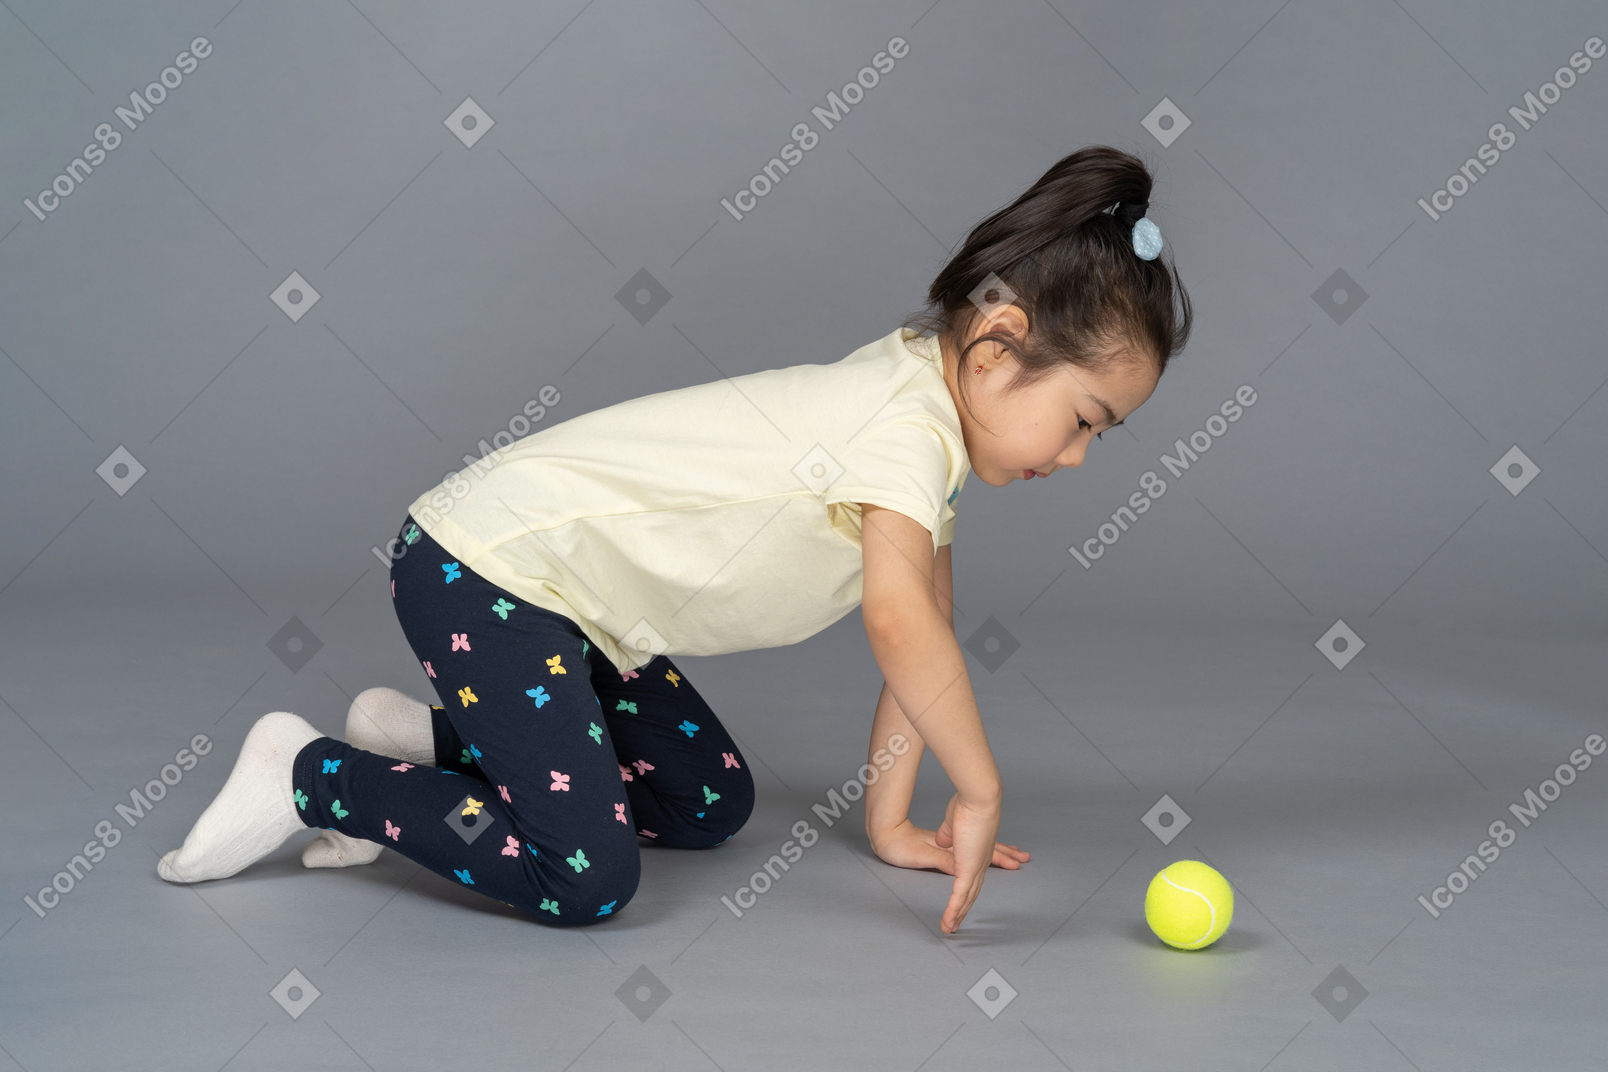 Ragazza a quattro zampe che gioca con una pallina da tennis